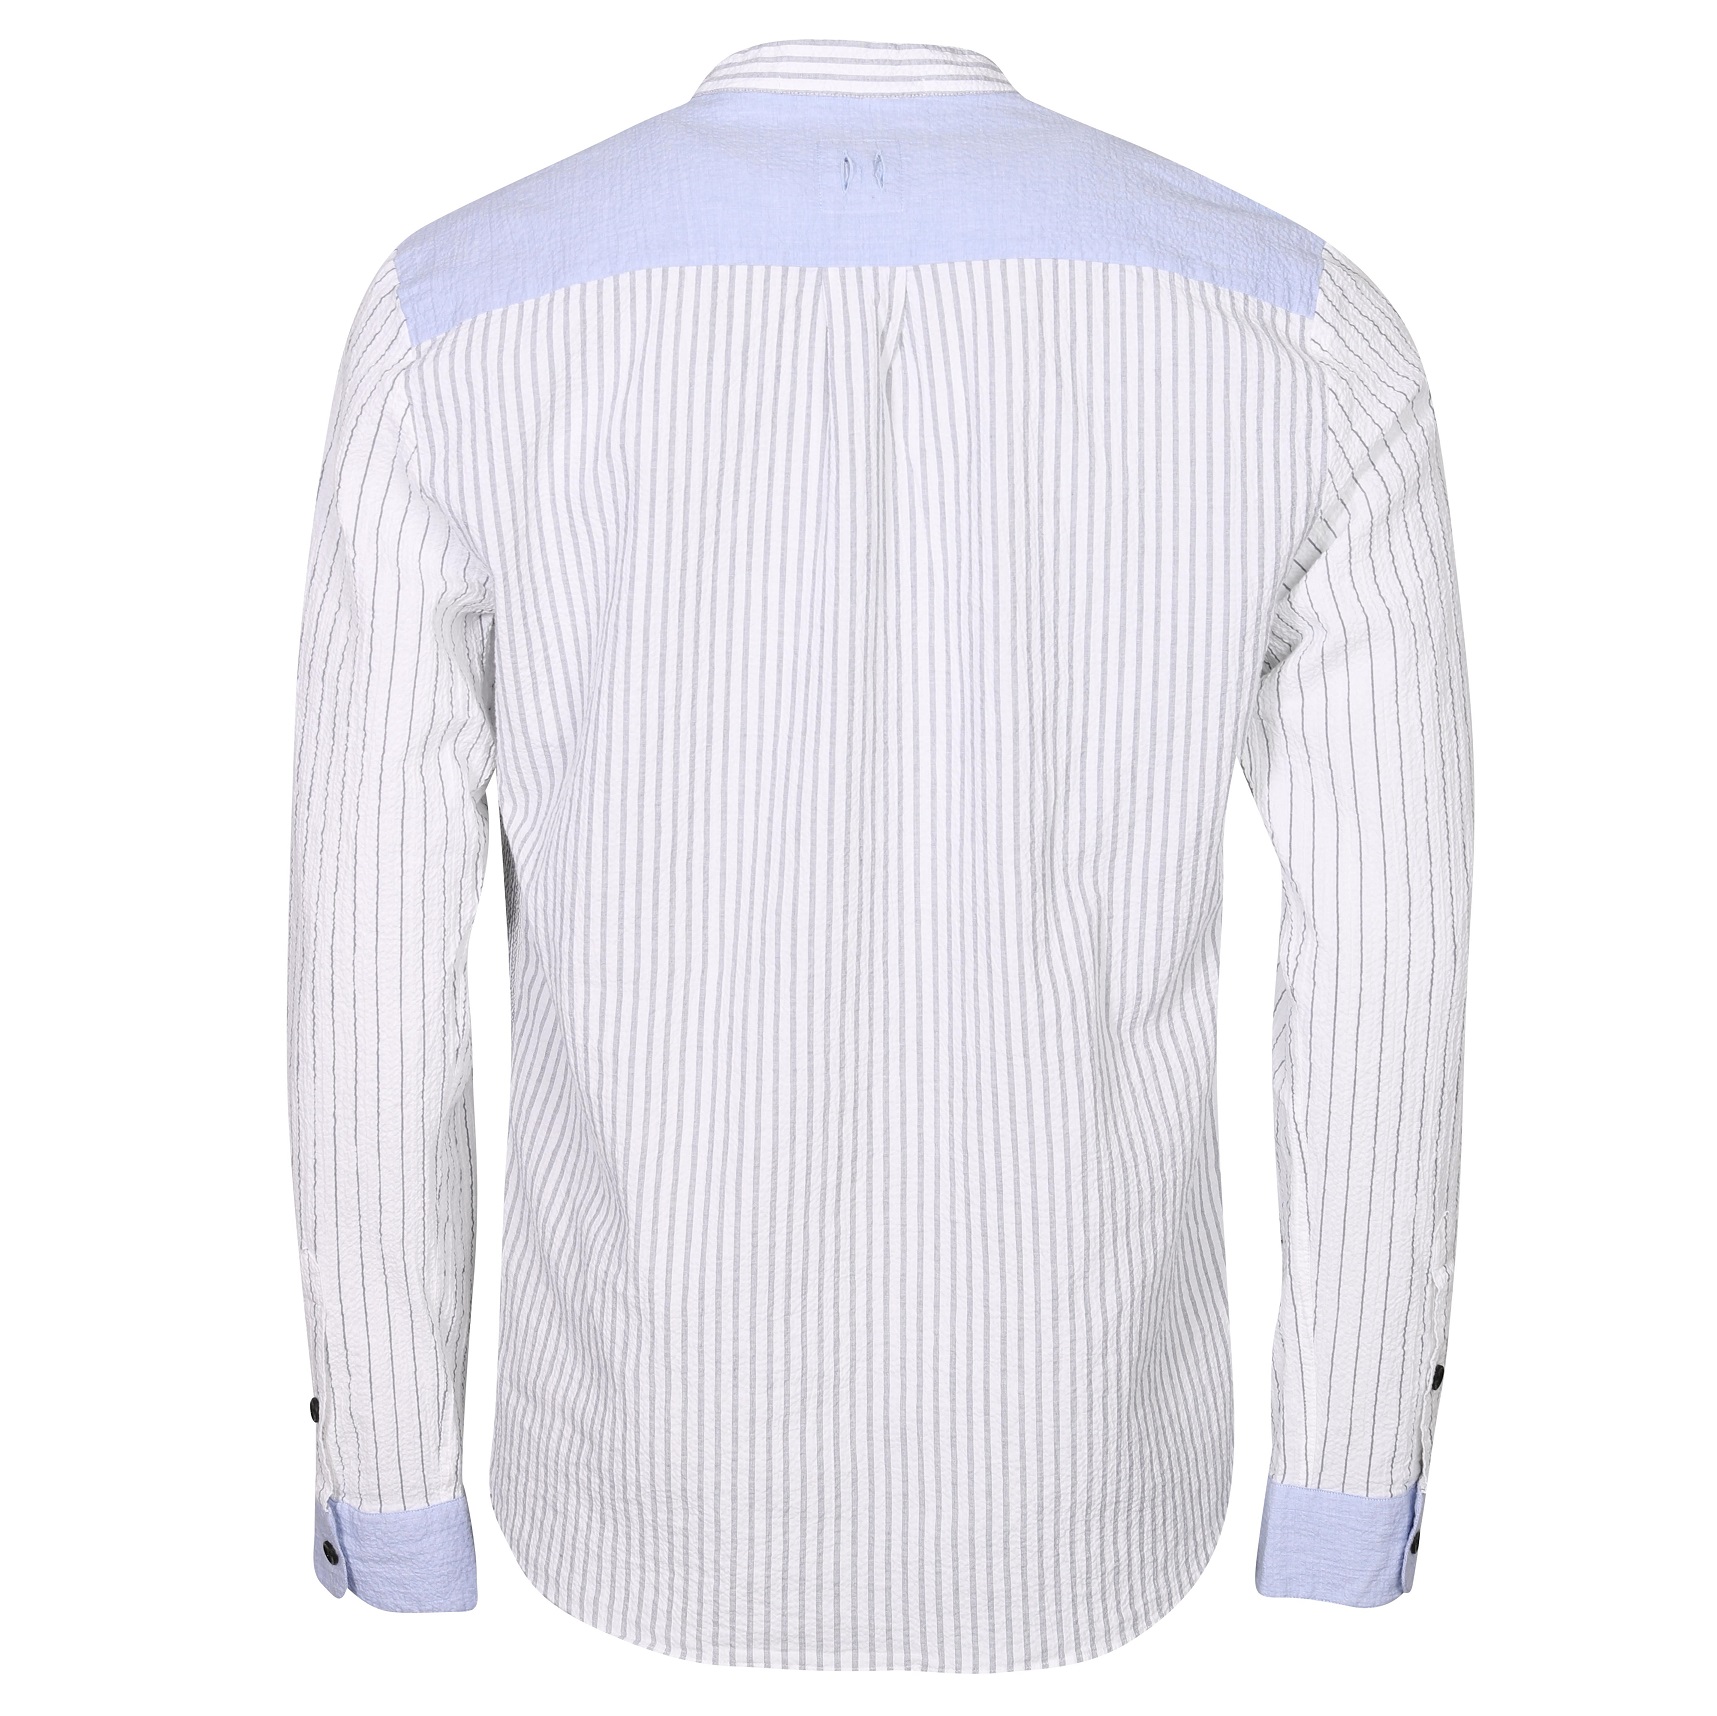 HANNES ROETHER Seersucker Shirt in Grey/White/Blue